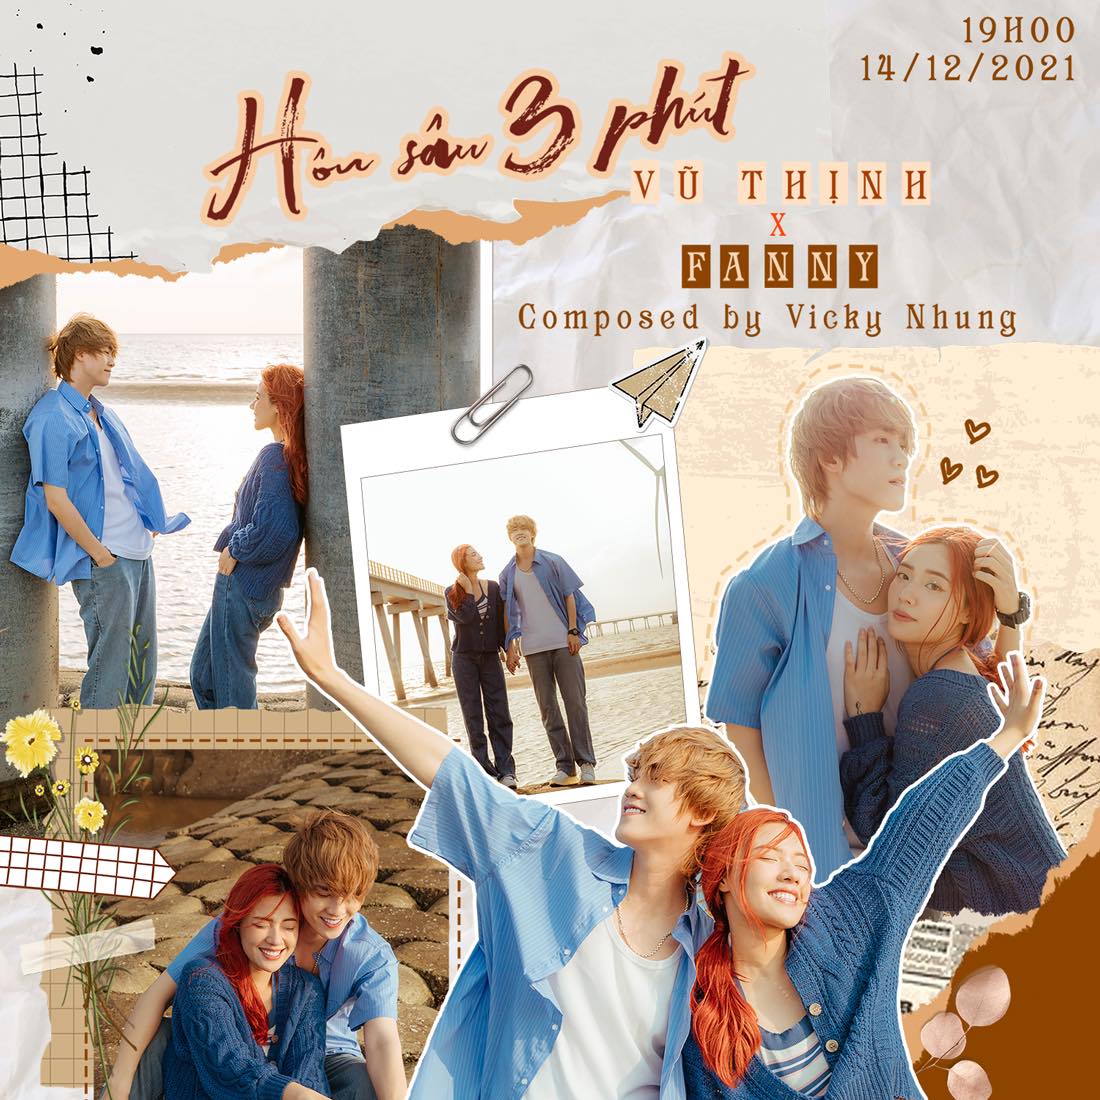 Vũ Thịnh featuring Fanny — Hôn Sâu 3 Phút cover artwork